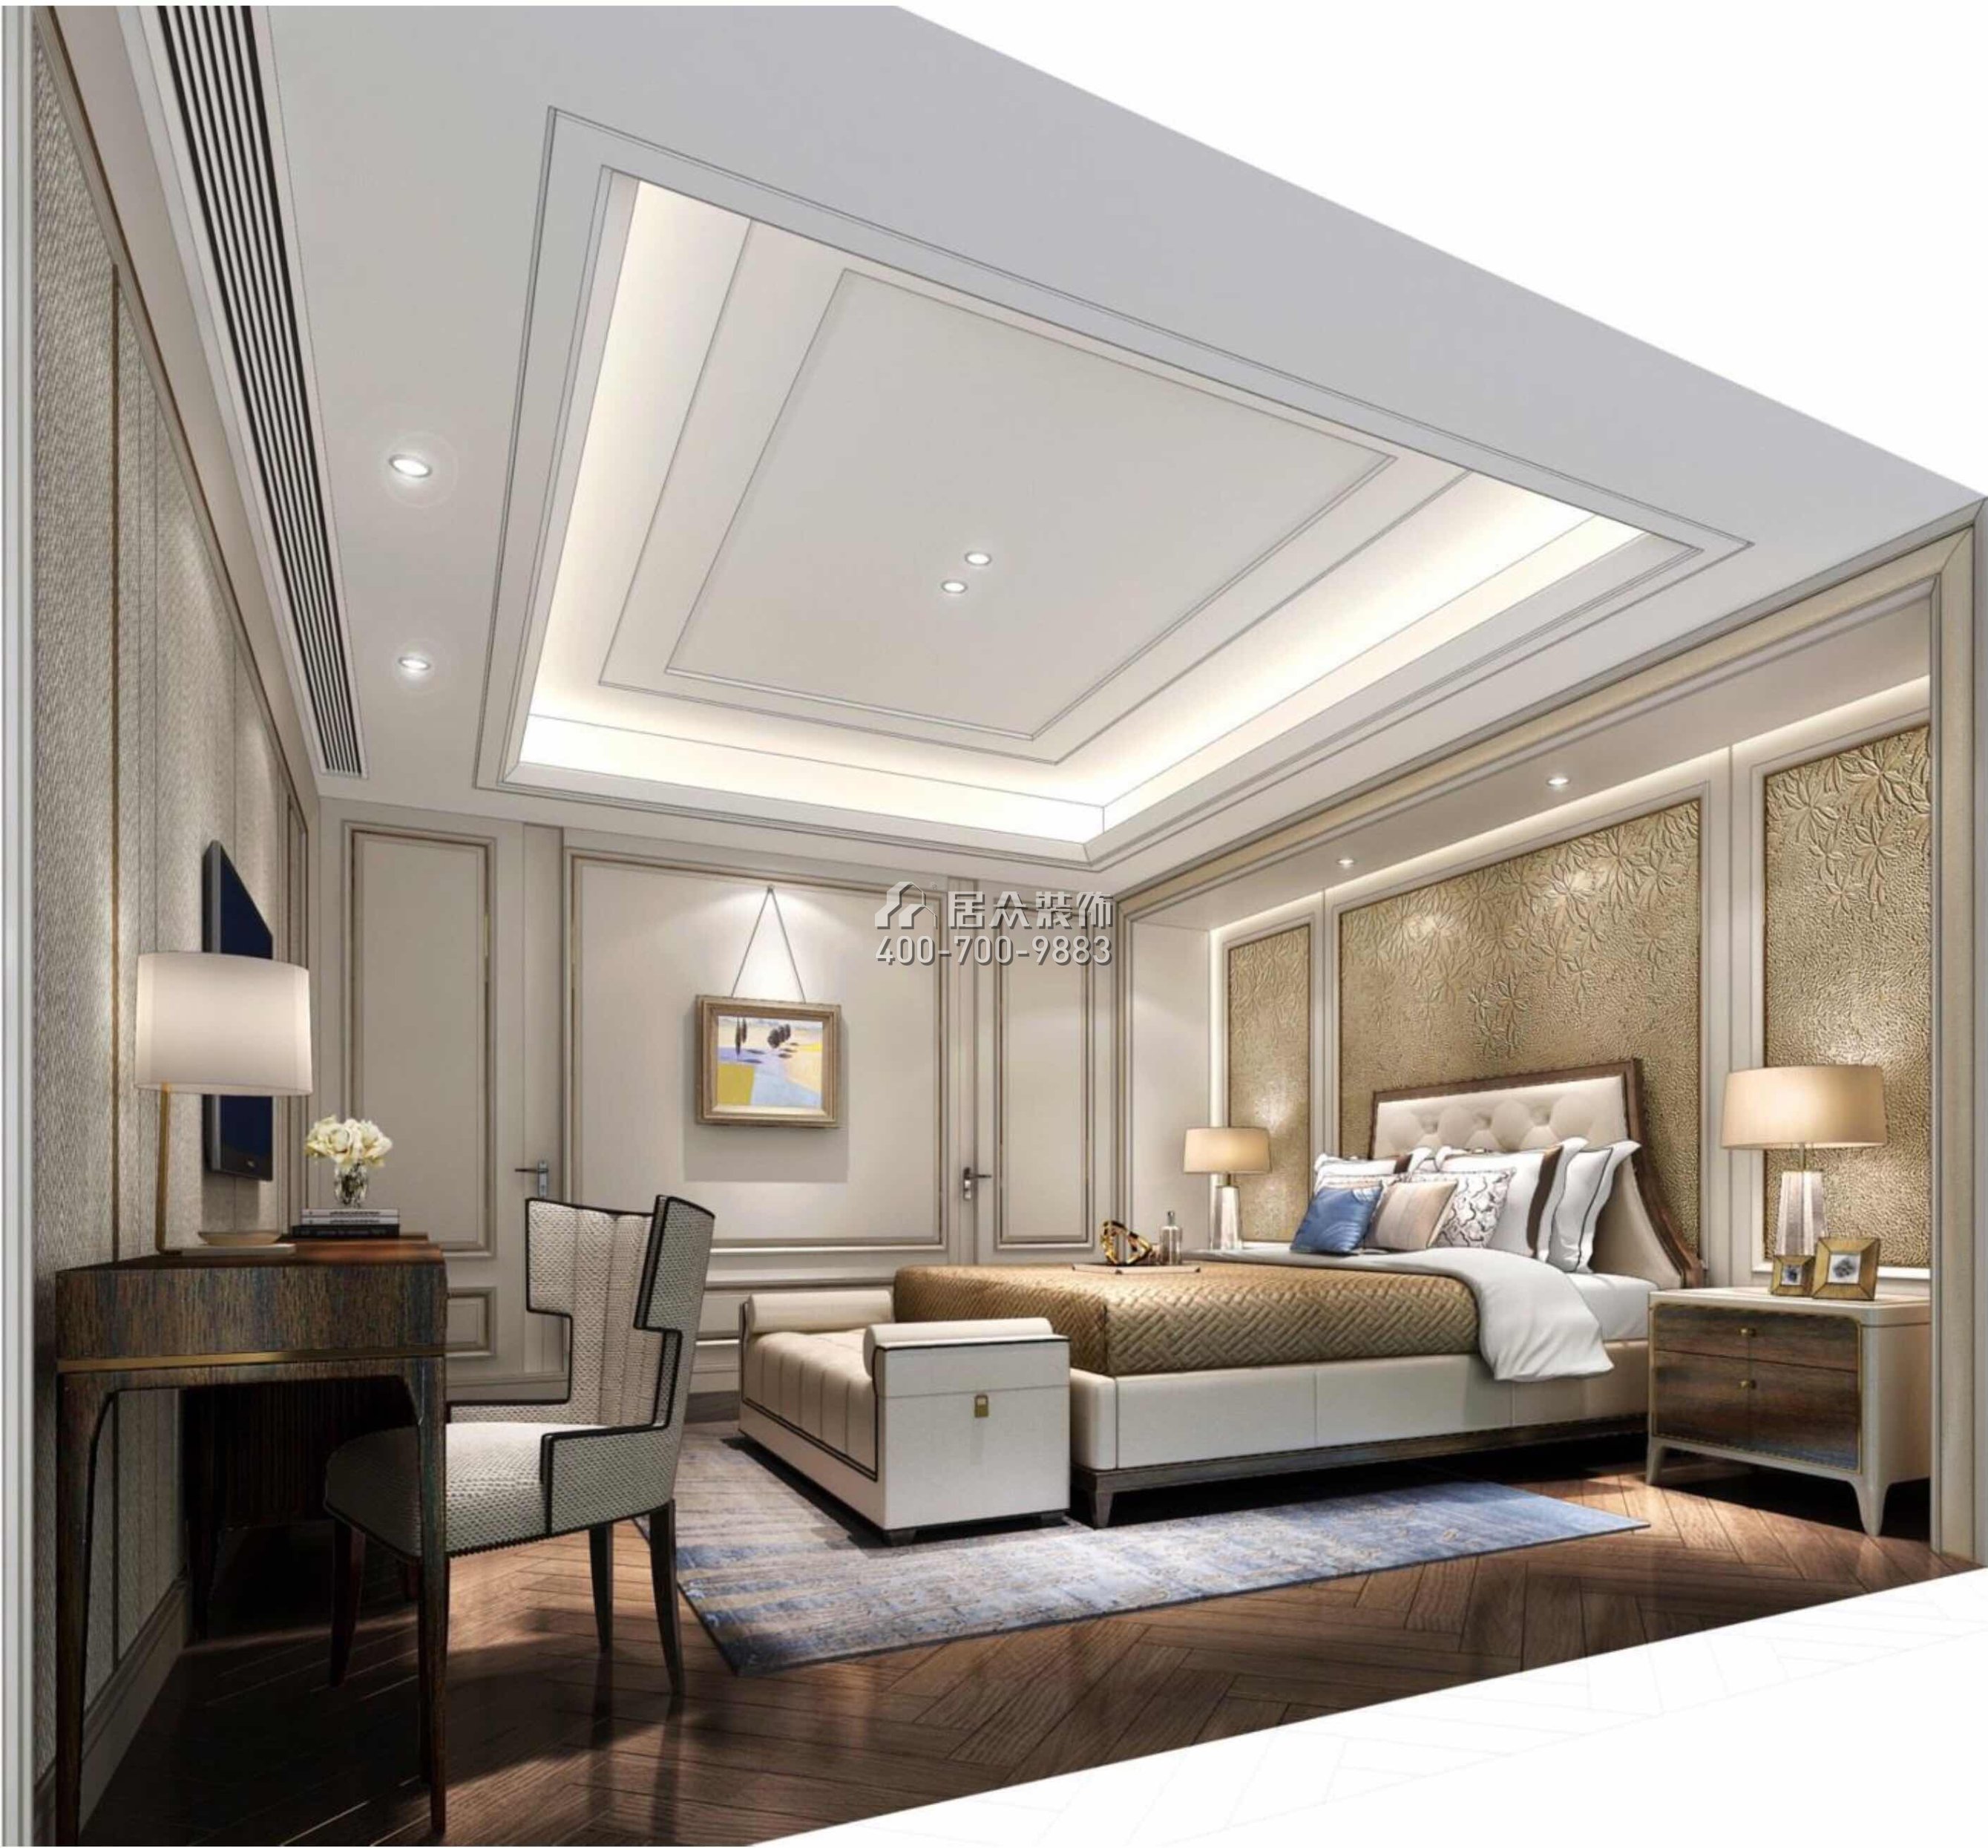 山语清晖一期226平方米欧式风格平层户型卧室装修效果图